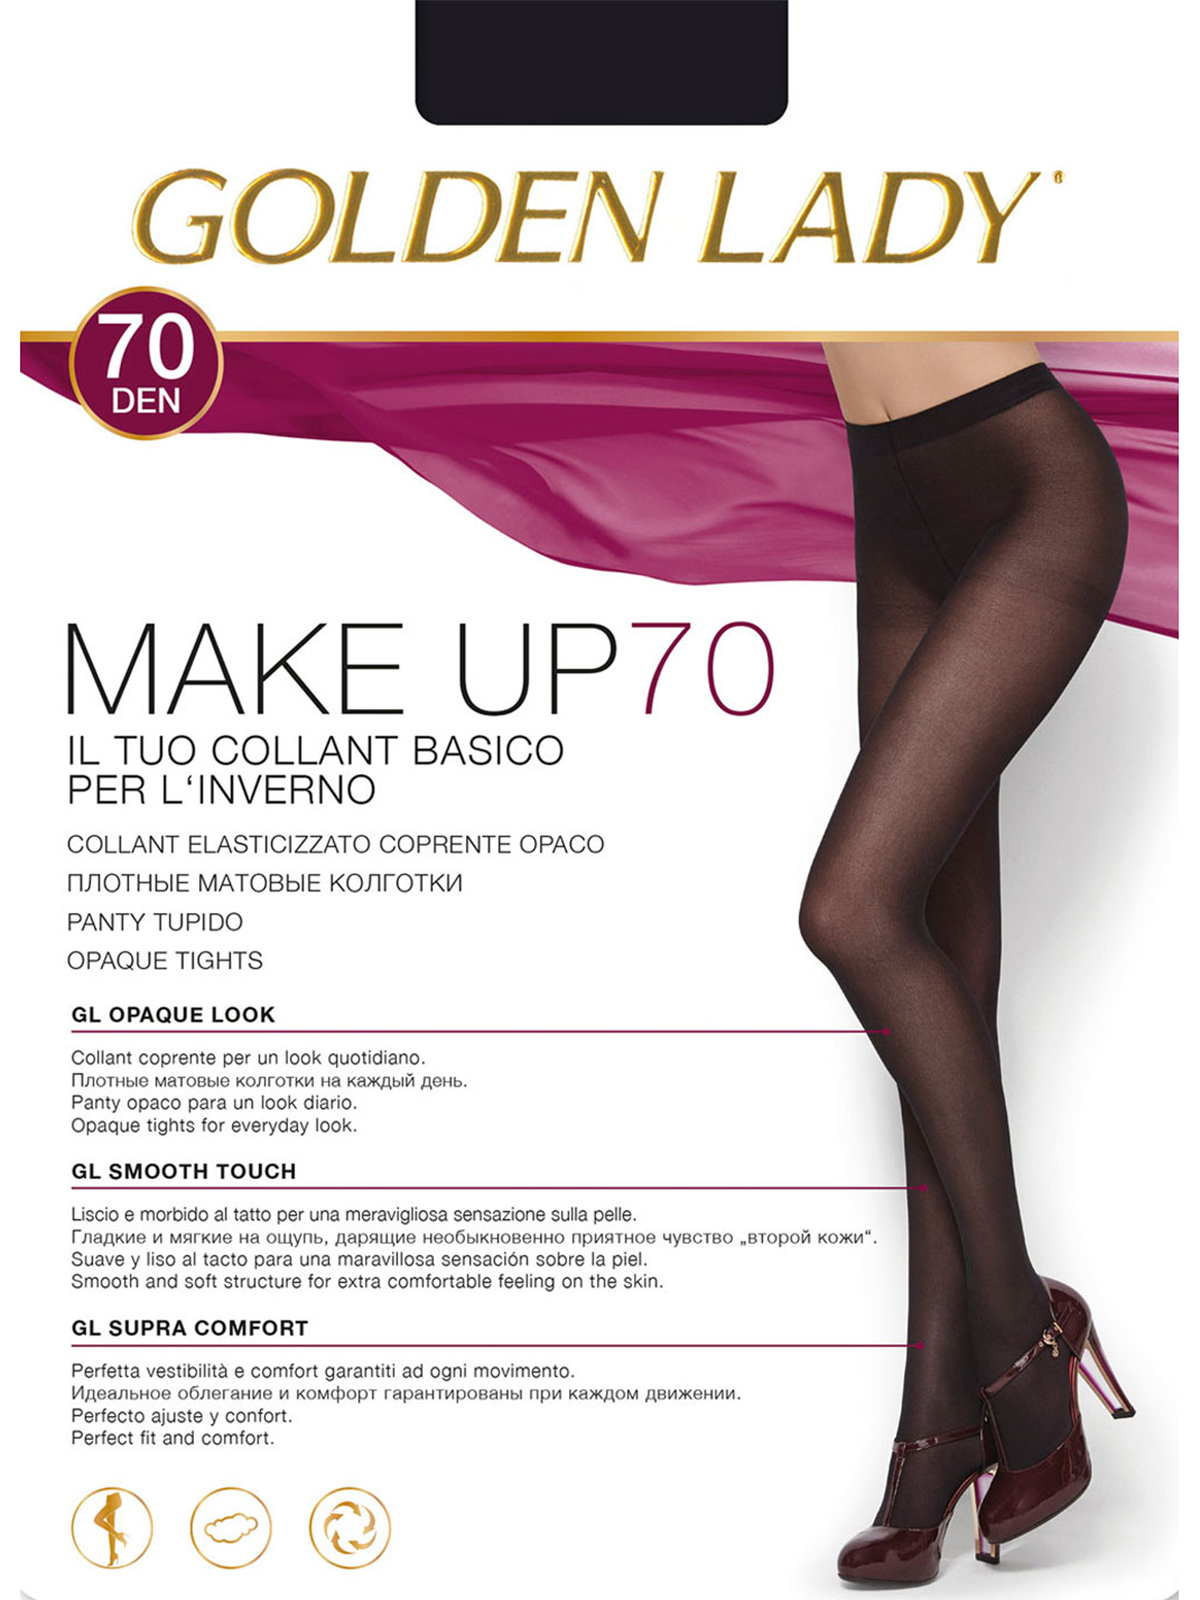 Golden lady Make up 70